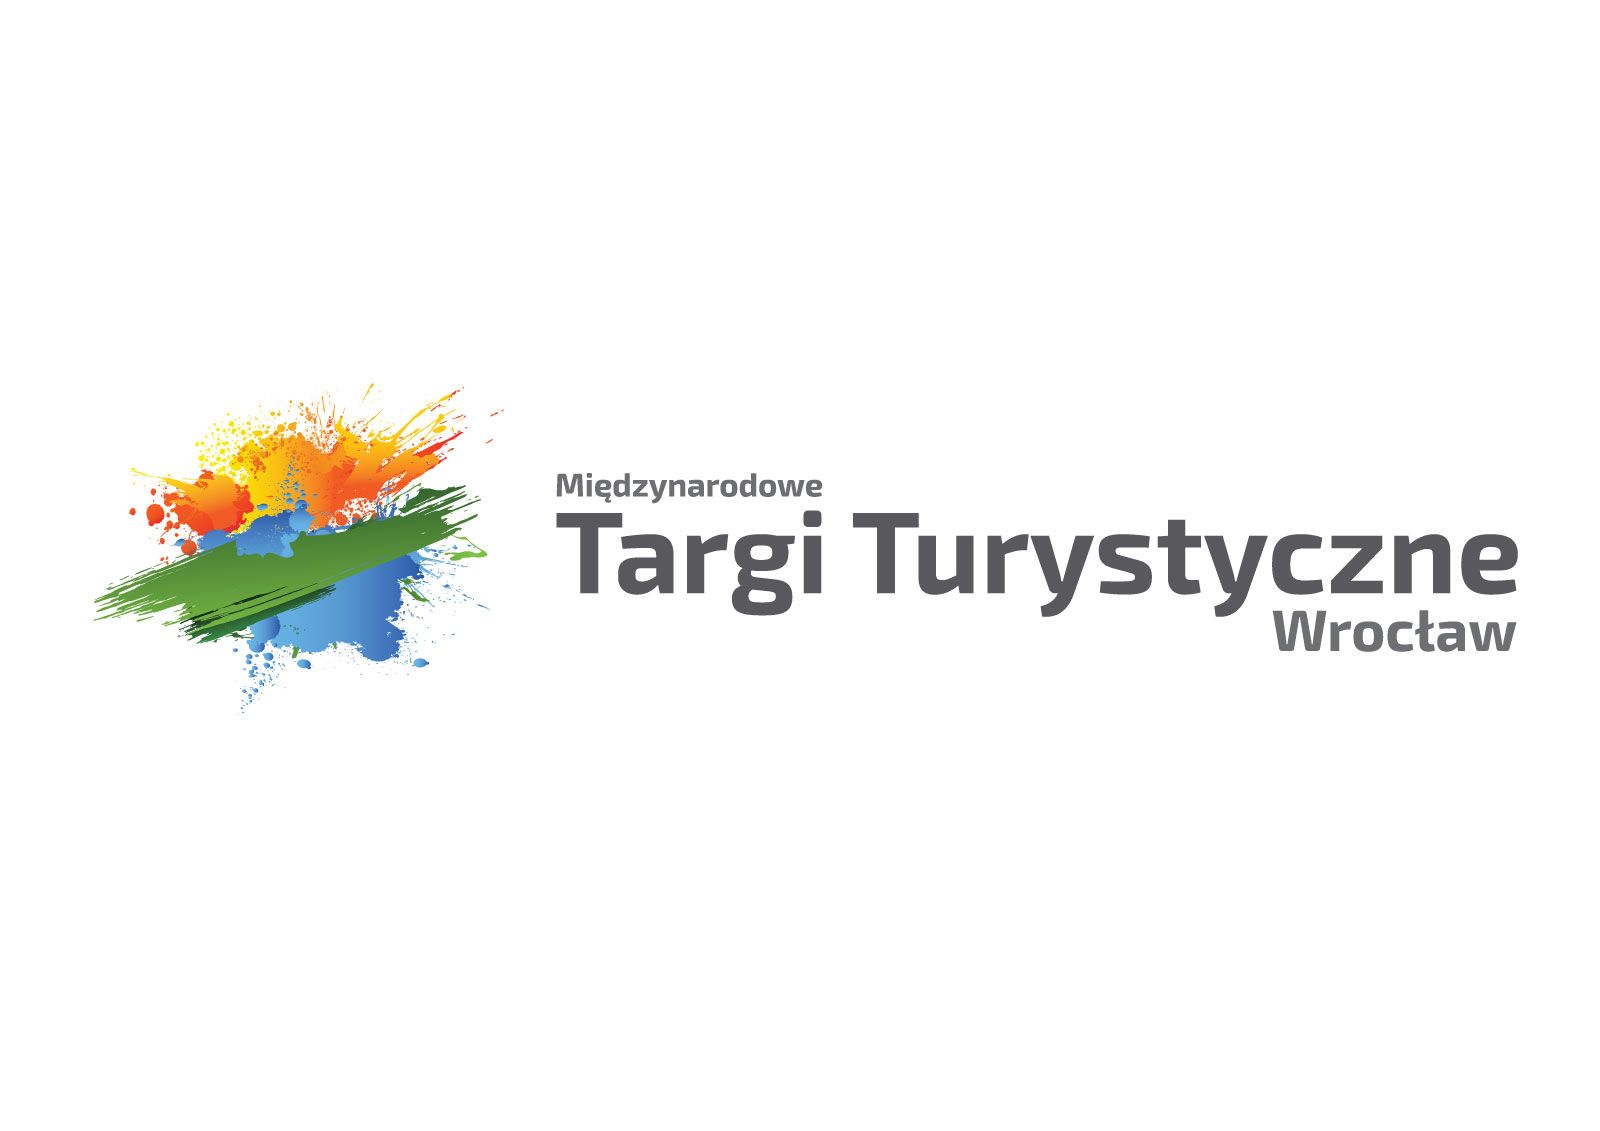 Międzynarodowe Targi Turystyczne we Wrocławiu - 26-28 LUTY 2016 – główne zdjęcie